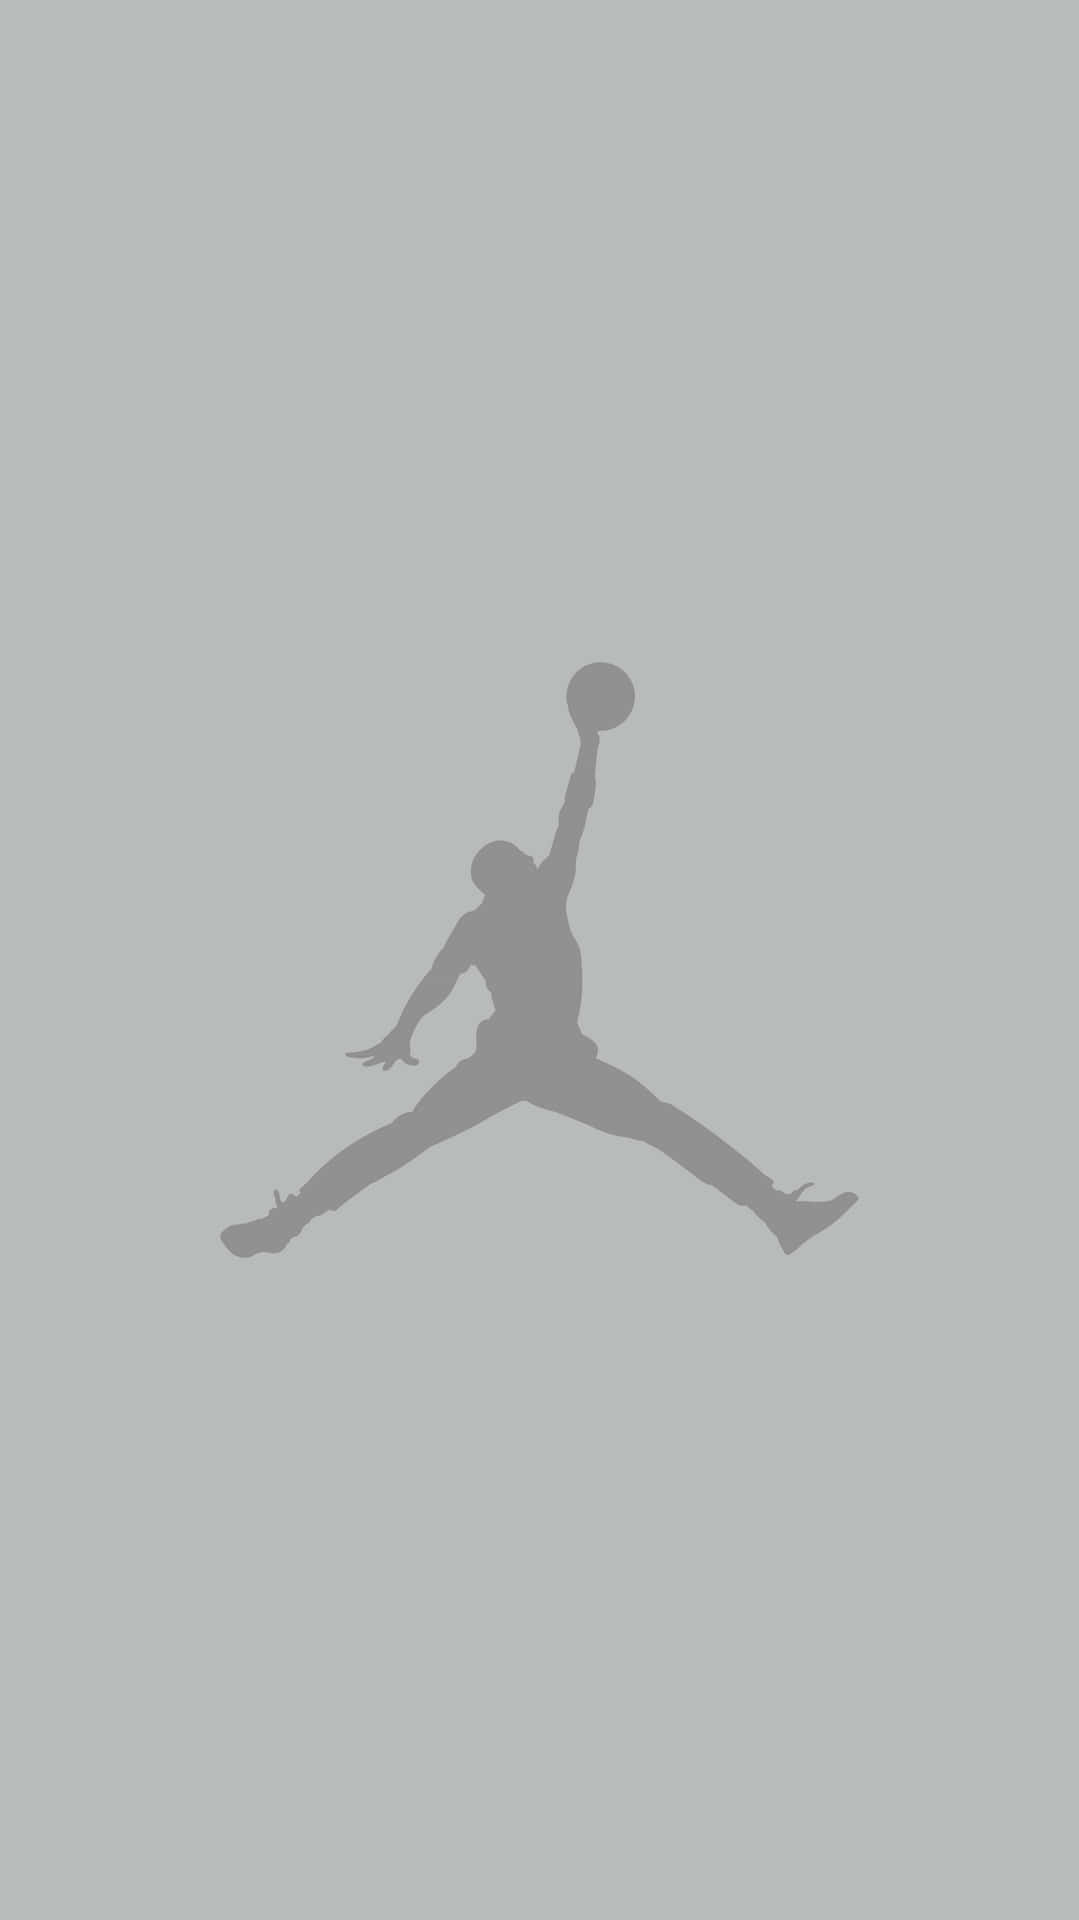 Einesilhouette Eines Basketballspielers, Der In Der Luft Springt. Wallpaper